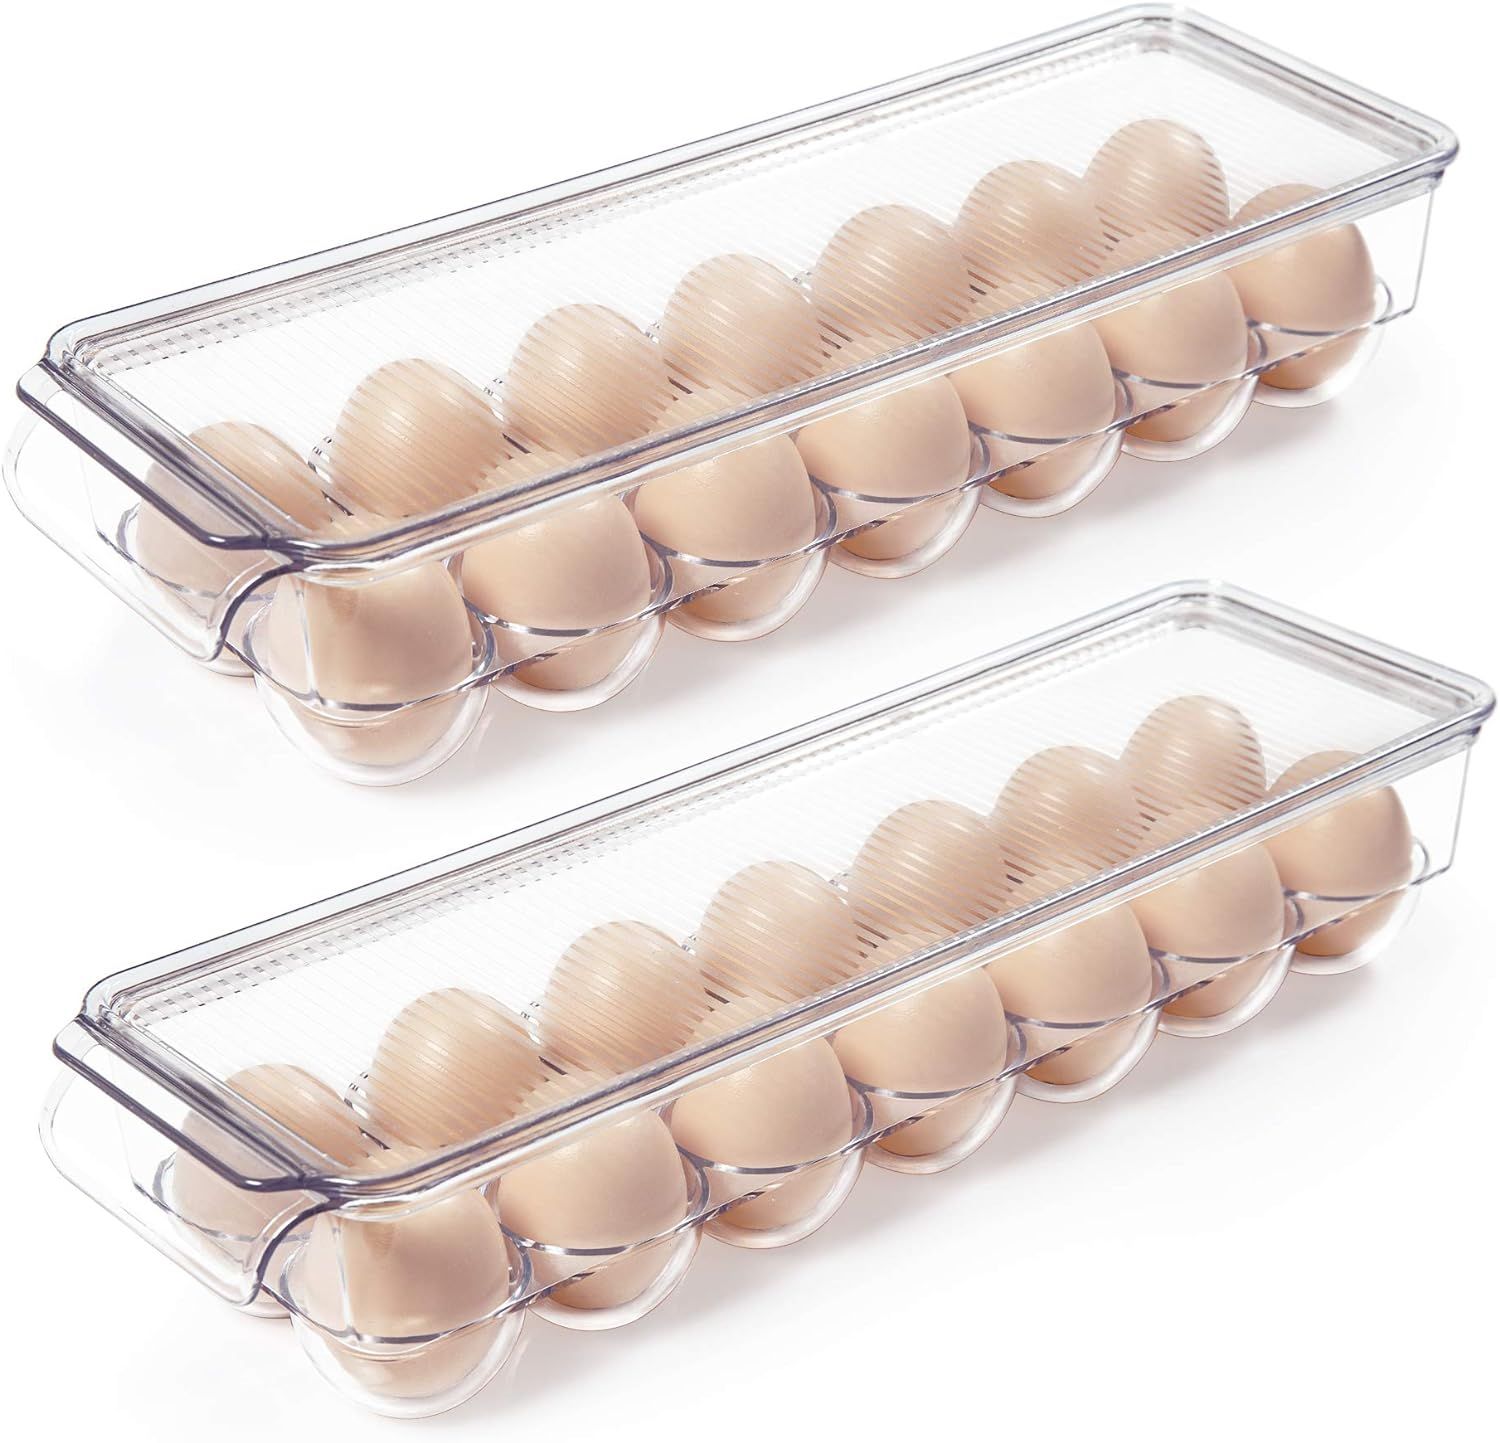 Vtopmart Egg Holder for Refrigerator 2 Pack, Plastic Egg Storage Container for Fridge, Clear Refr... | Amazon (US)